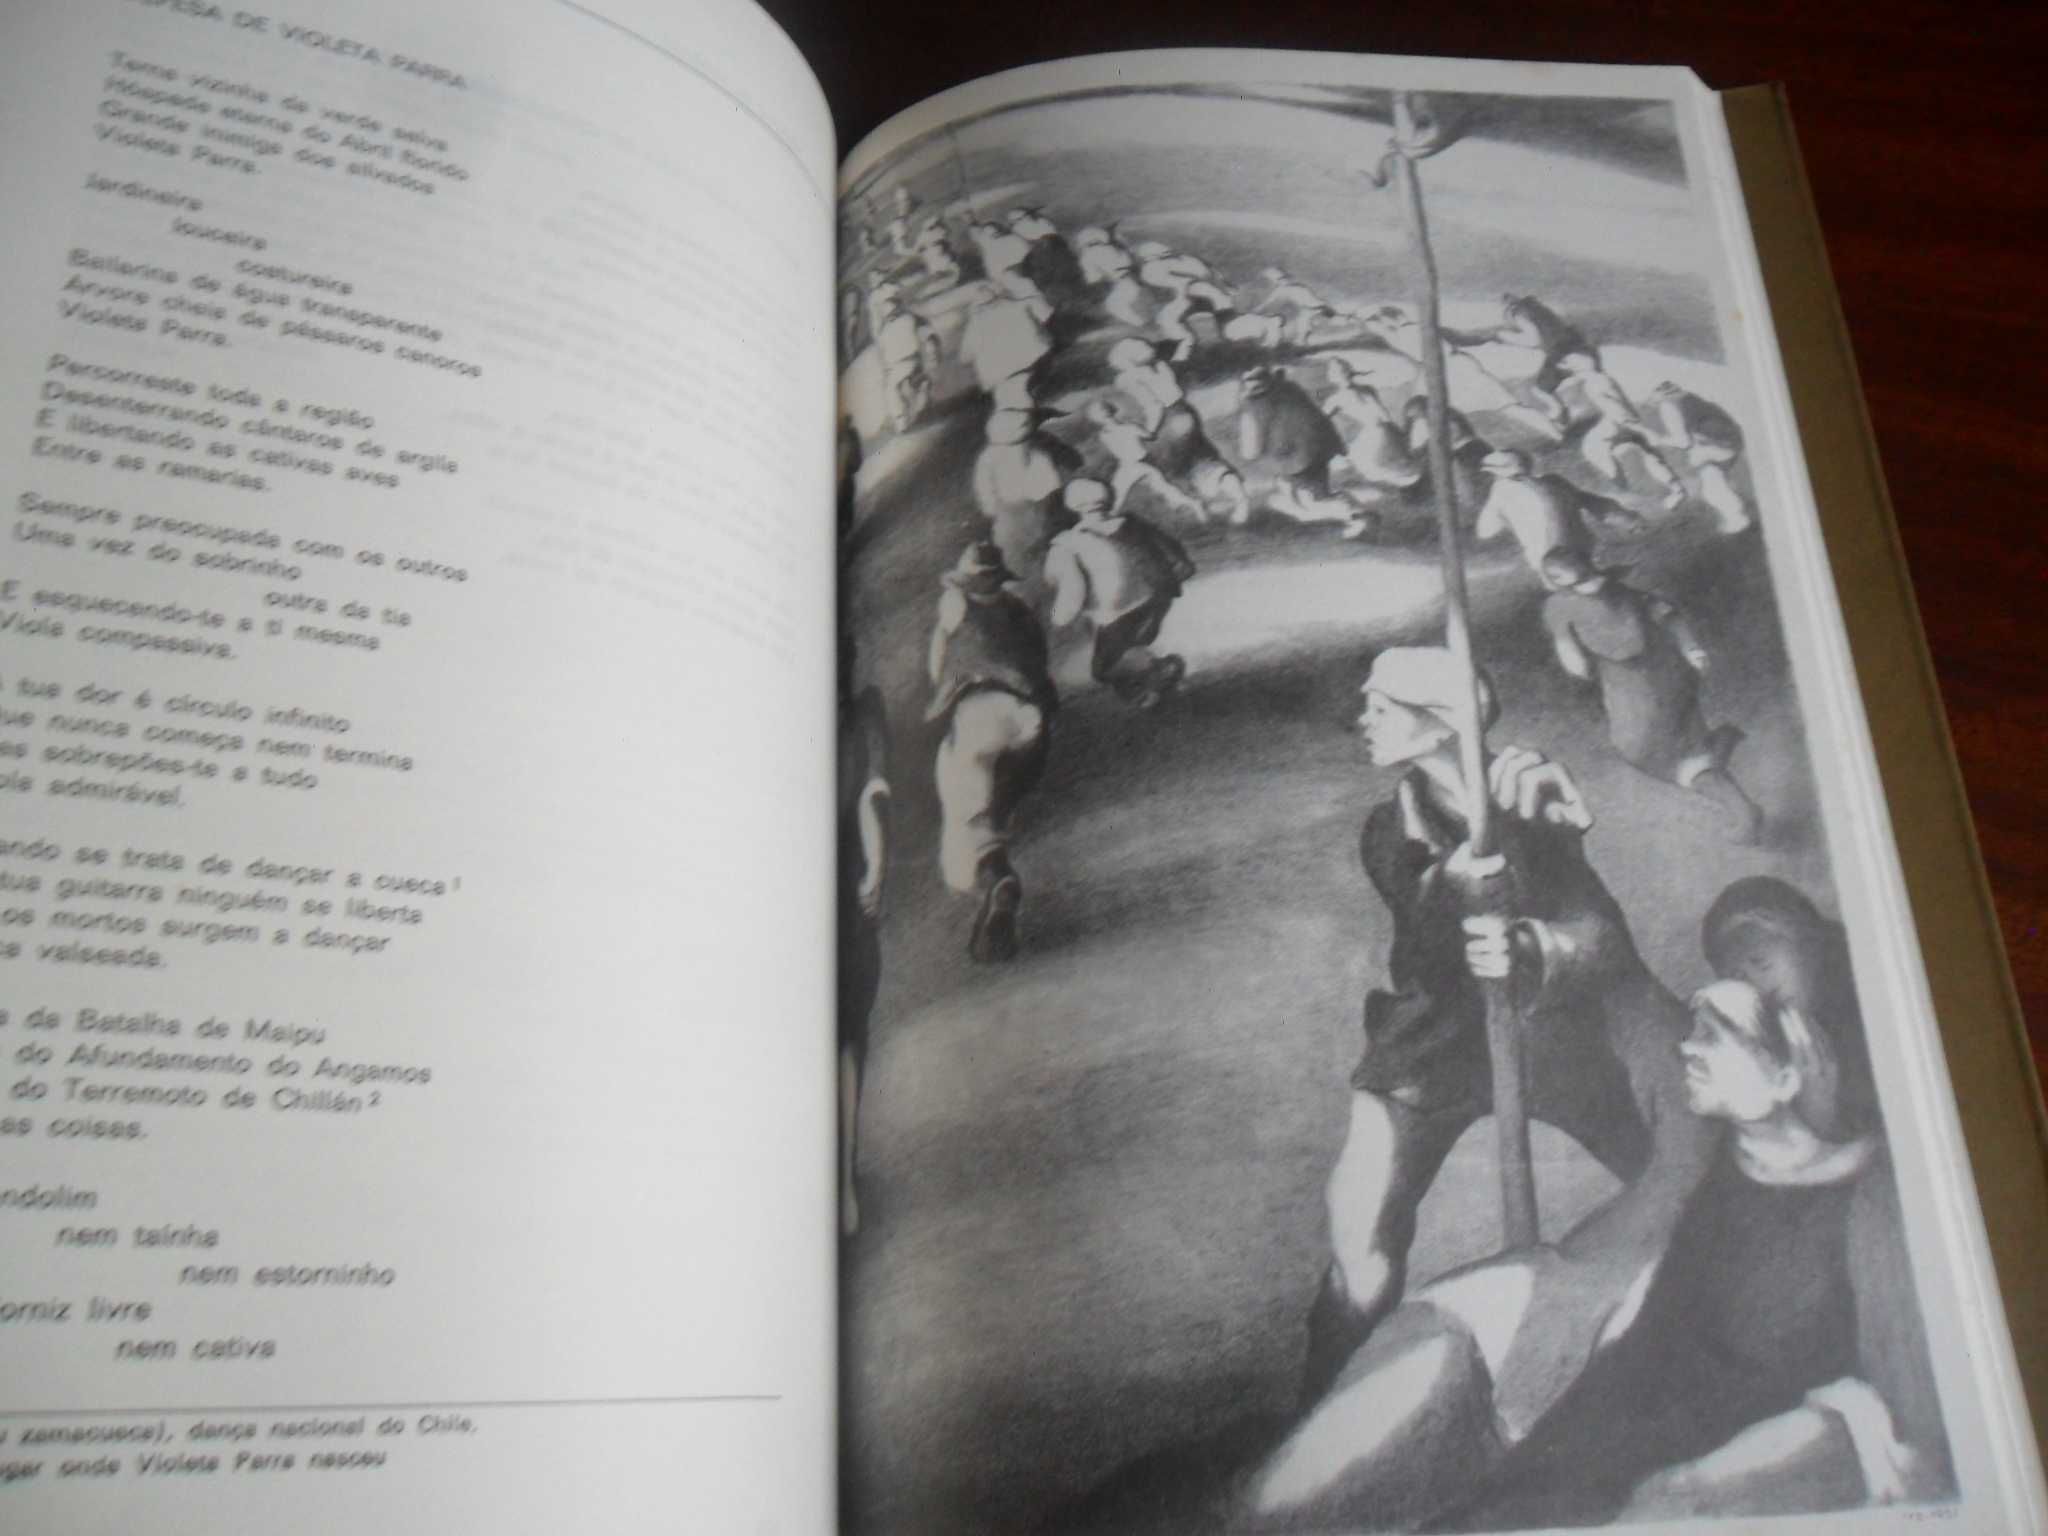 "Poemas do Último Século Antes do Homem" de Vários - 2ª Edição de 1979